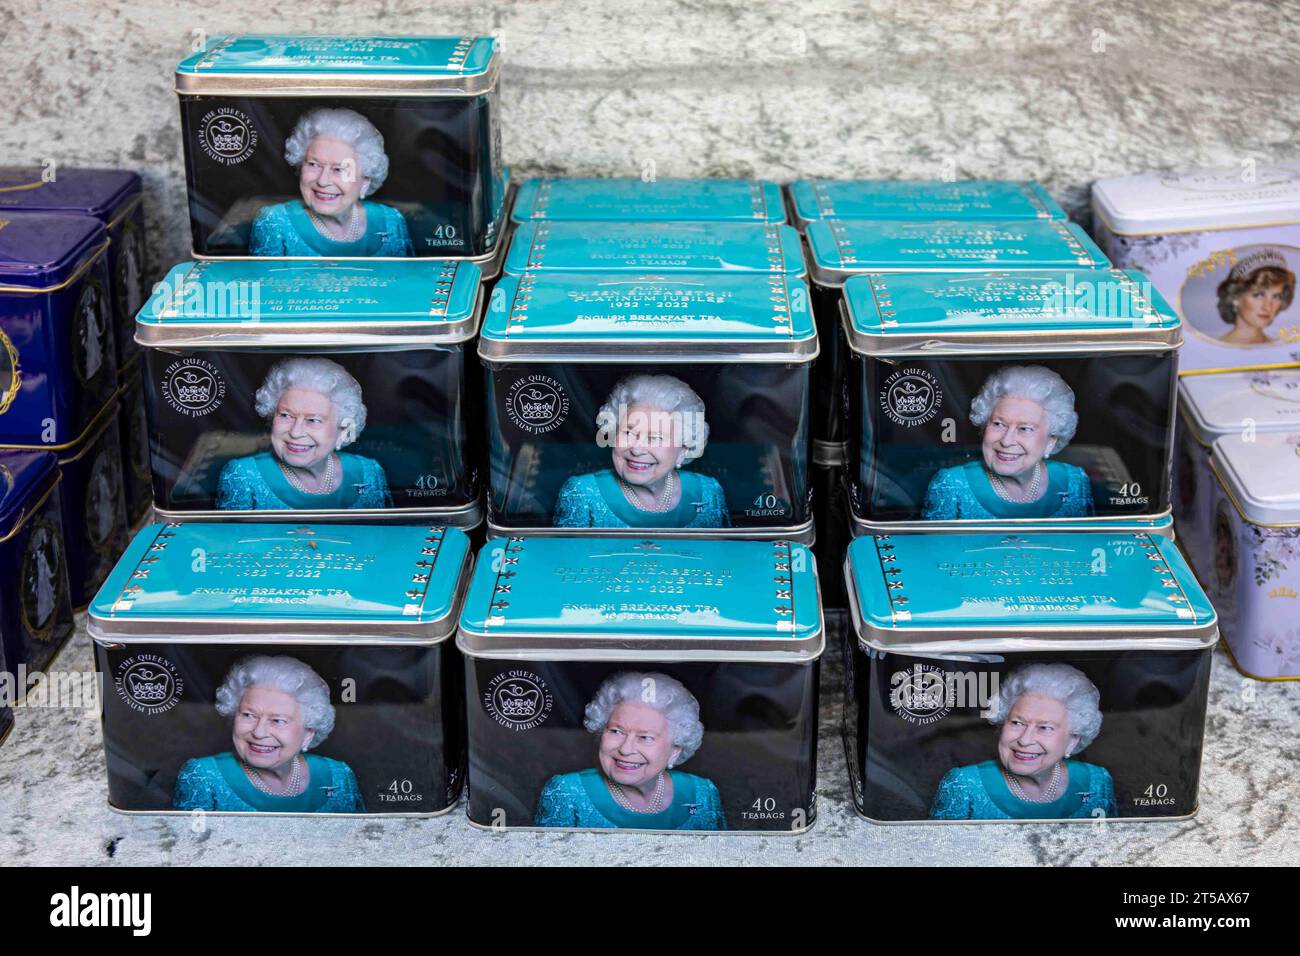 Barattoli da tè per colazione all'inglese con immagine della regina Elisabetta II in vendita all'International Grand Market di Helsinki, Finlandia Foto Stock